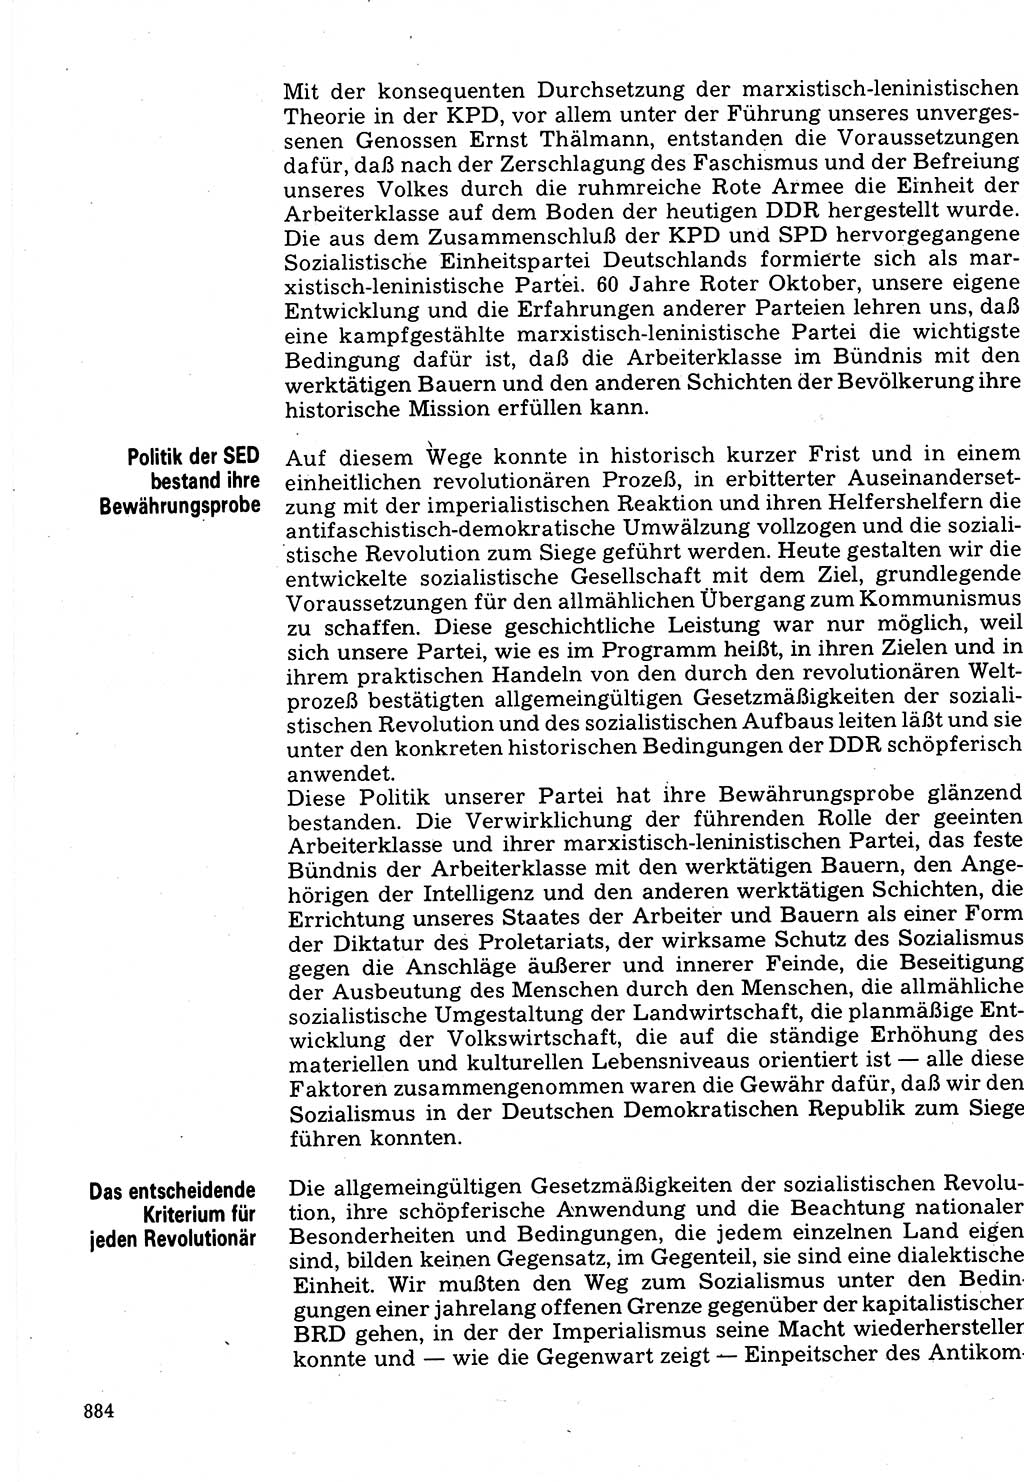 Neuer Weg (NW), Organ des Zentralkomitees (ZK) der SED (Sozialistische Einheitspartei Deutschlands) für Fragen des Parteilebens, 32. Jahrgang [Deutsche Demokratische Republik (DDR)] 1977, Seite 884 (NW ZK SED DDR 1977, S. 884)